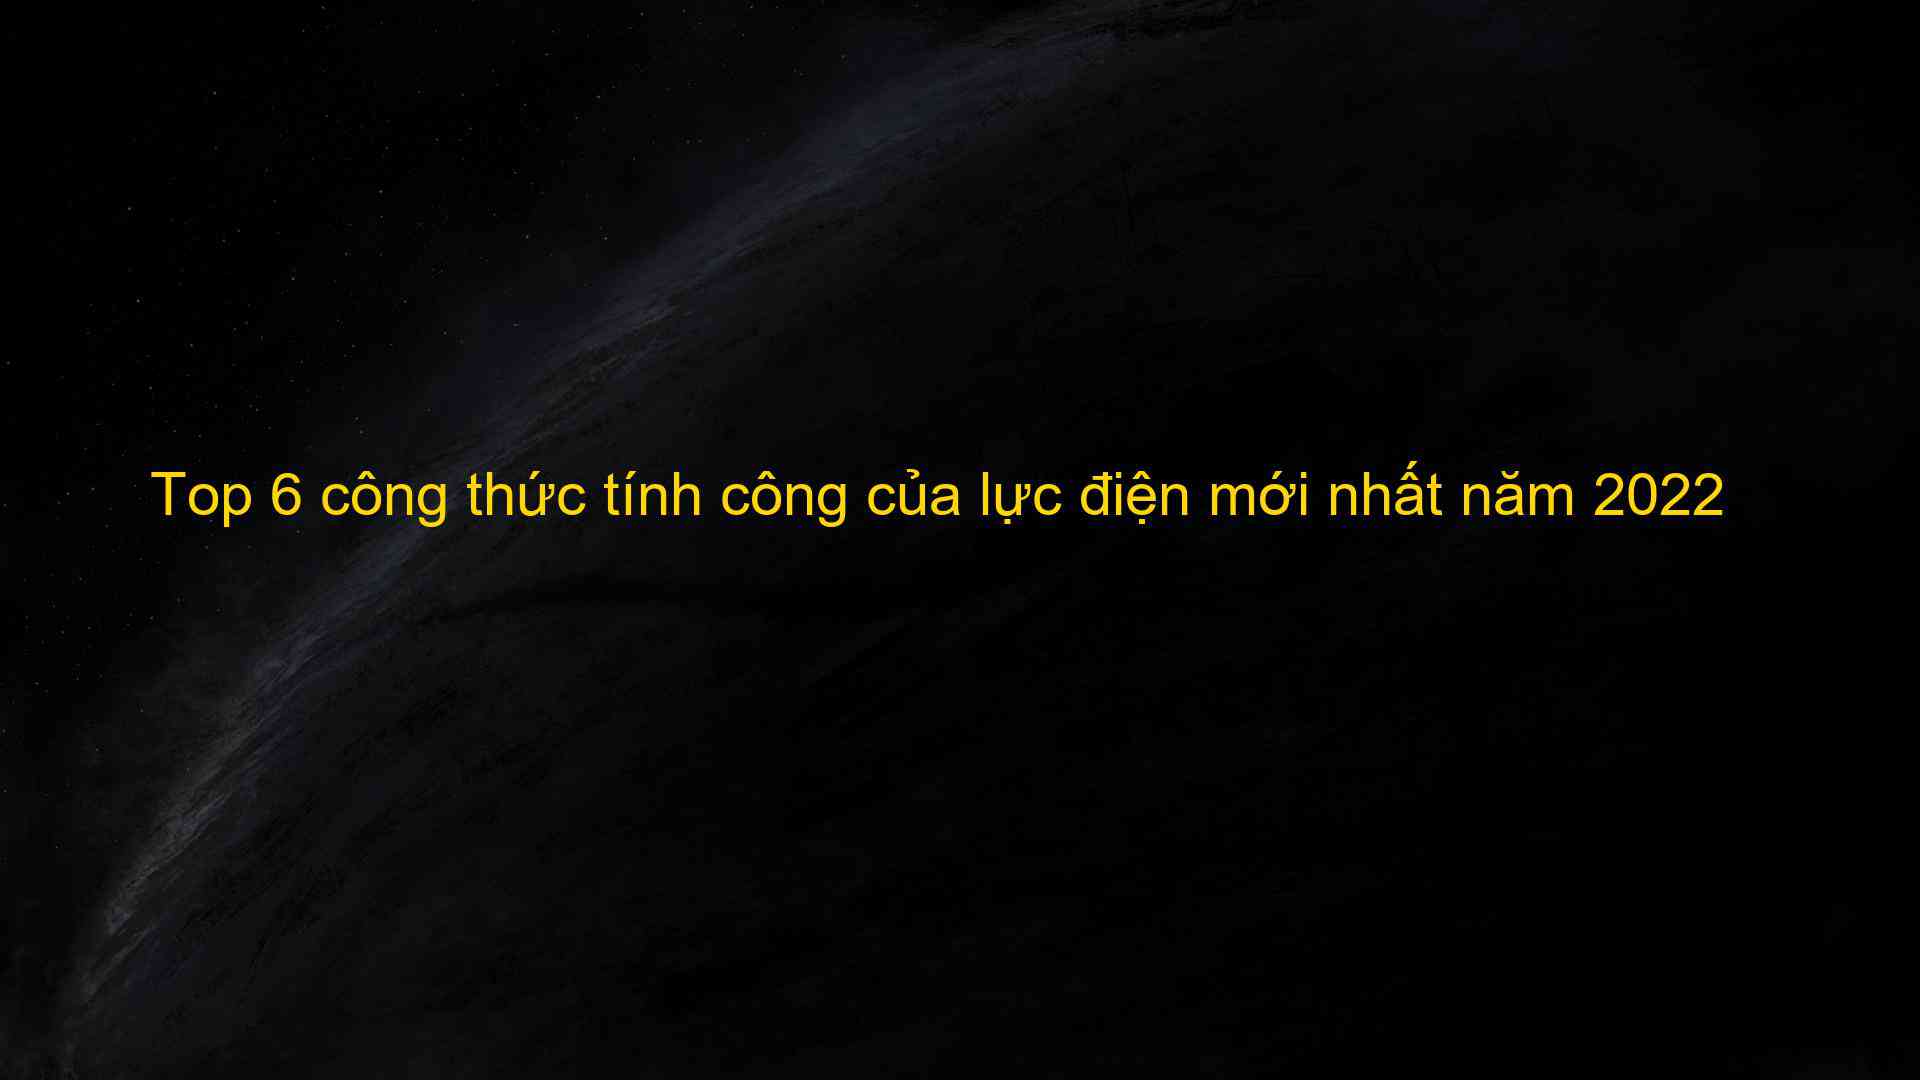 Top 6 cong thuc tinh cong cua luc dien moi nhat nam 2022 1659781726